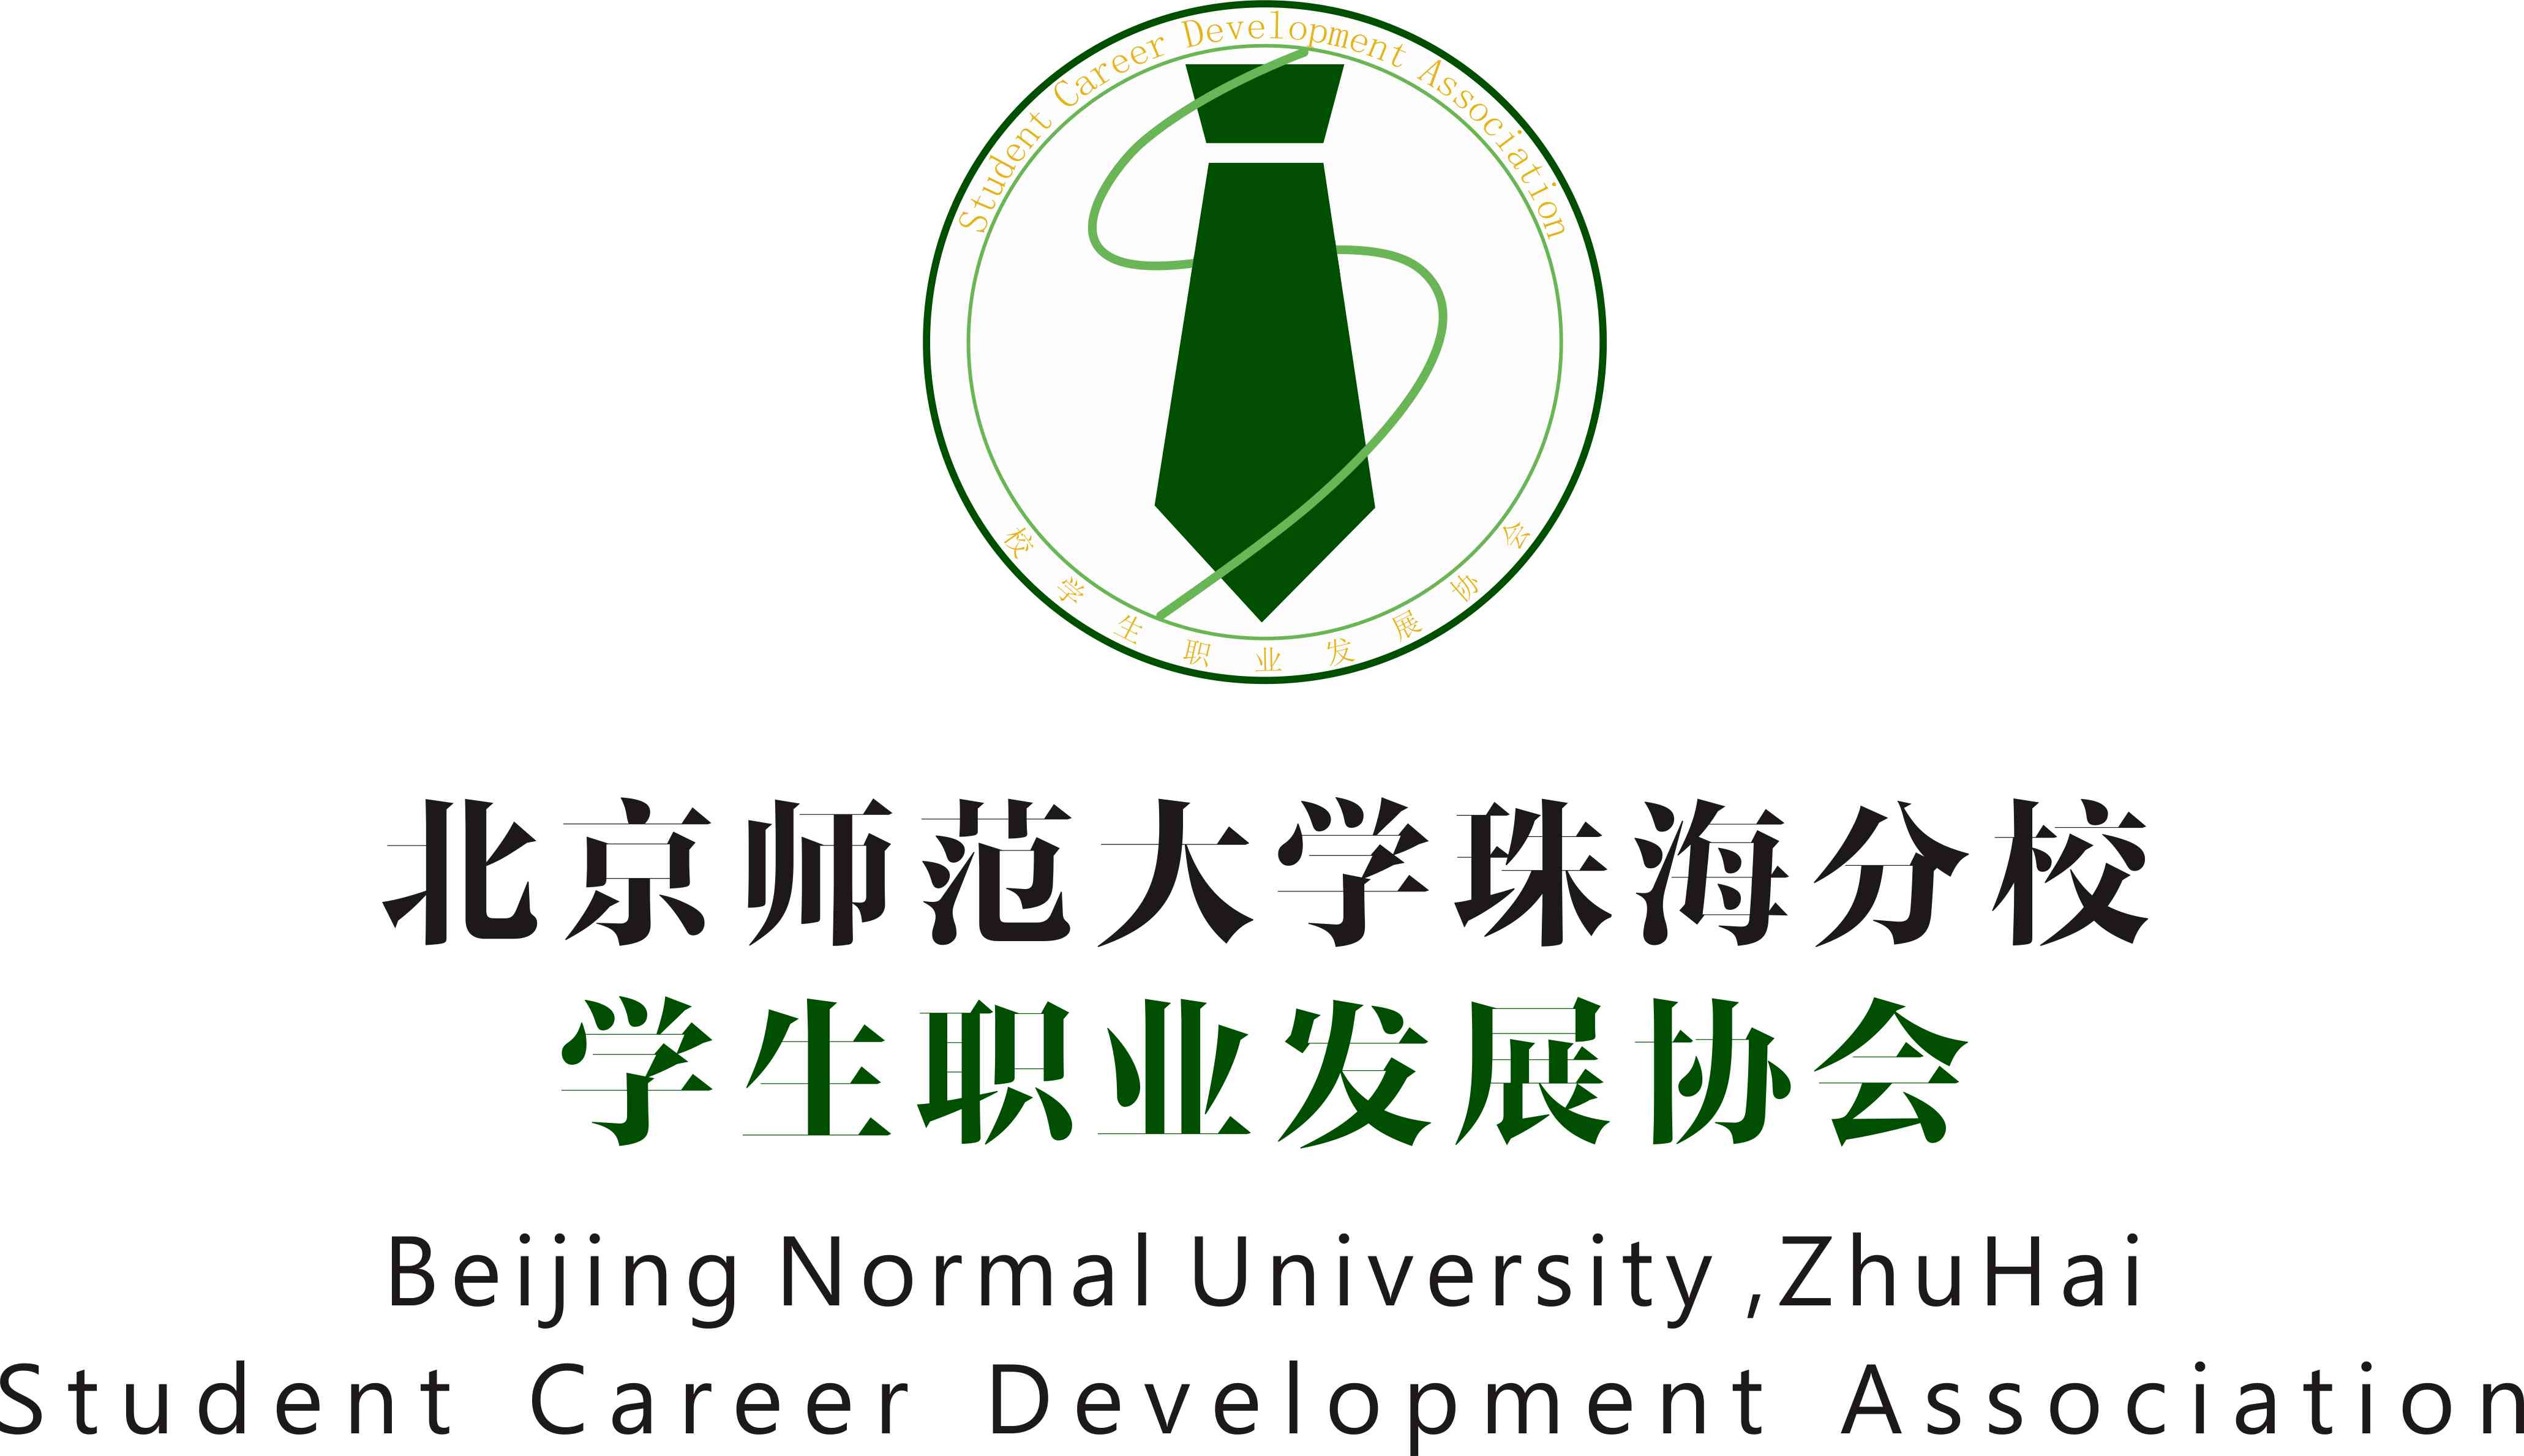 北京師範大學珠海分校學生職業發展協會